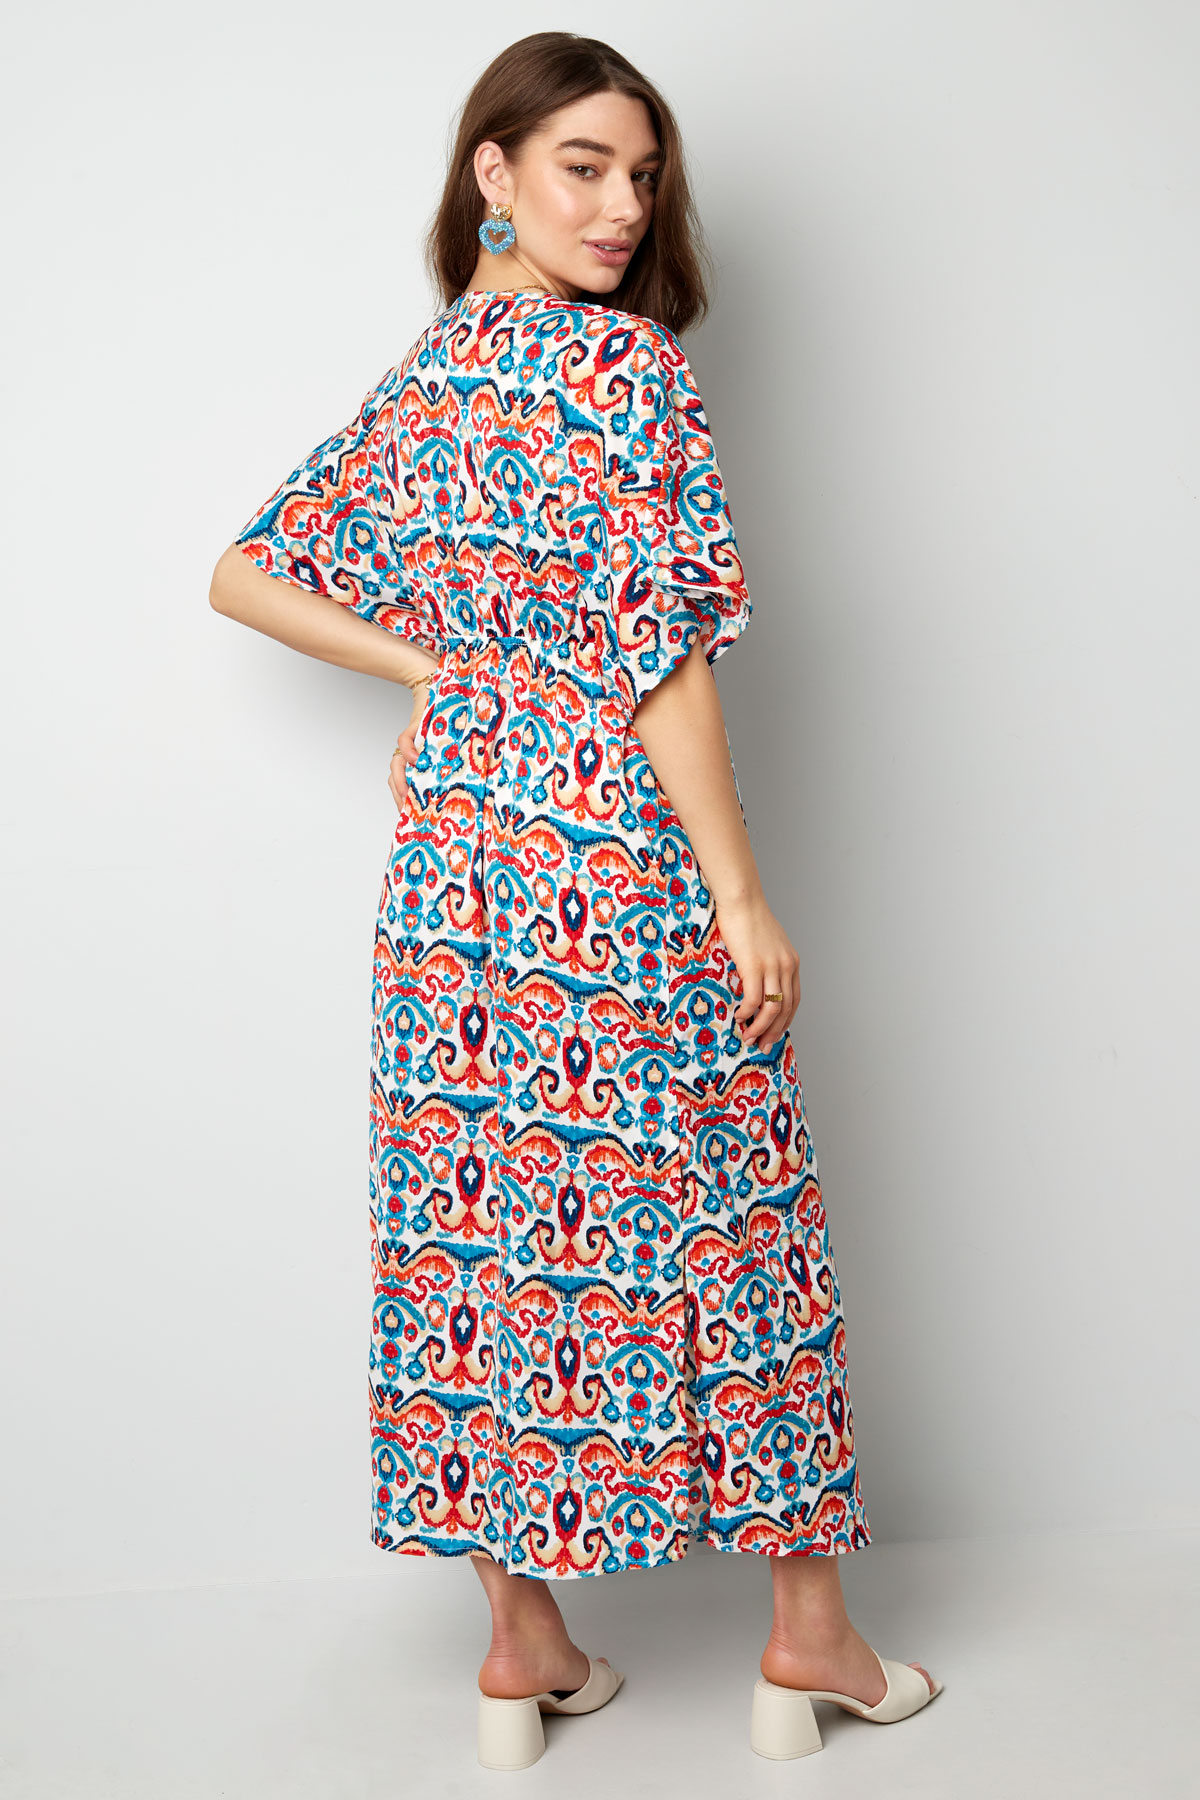 Langes Kleid mit Print - Rot/Blau - S h5 Bild8